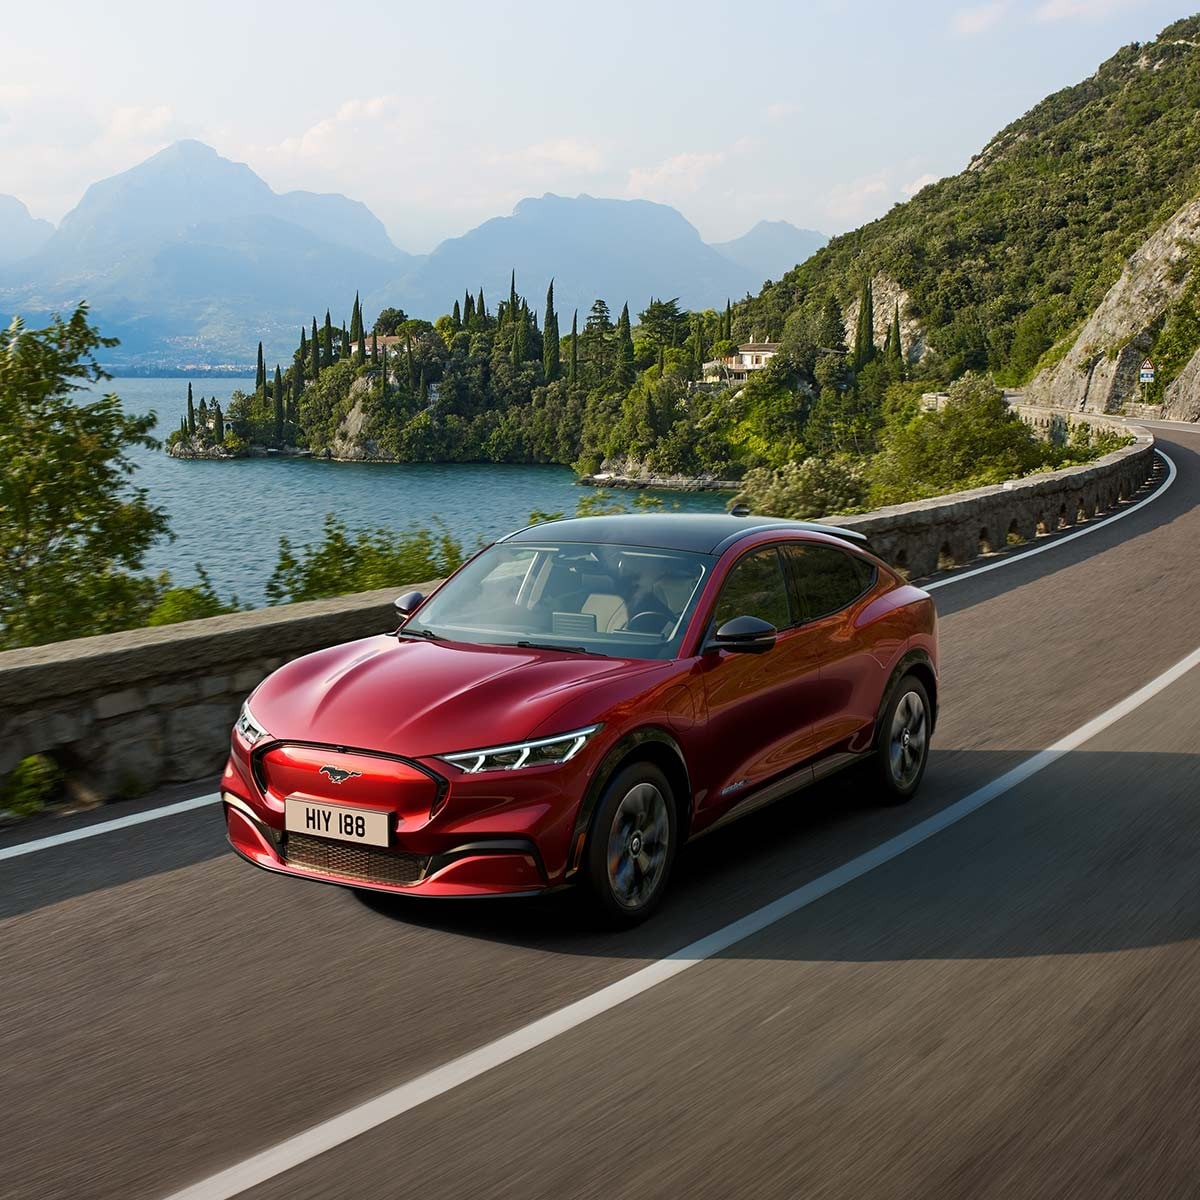 Ford Mustang Mach-E in Rot. Dreiviertelansicht von vorne, fahrend auf einer Straße am Ufer eines Sees